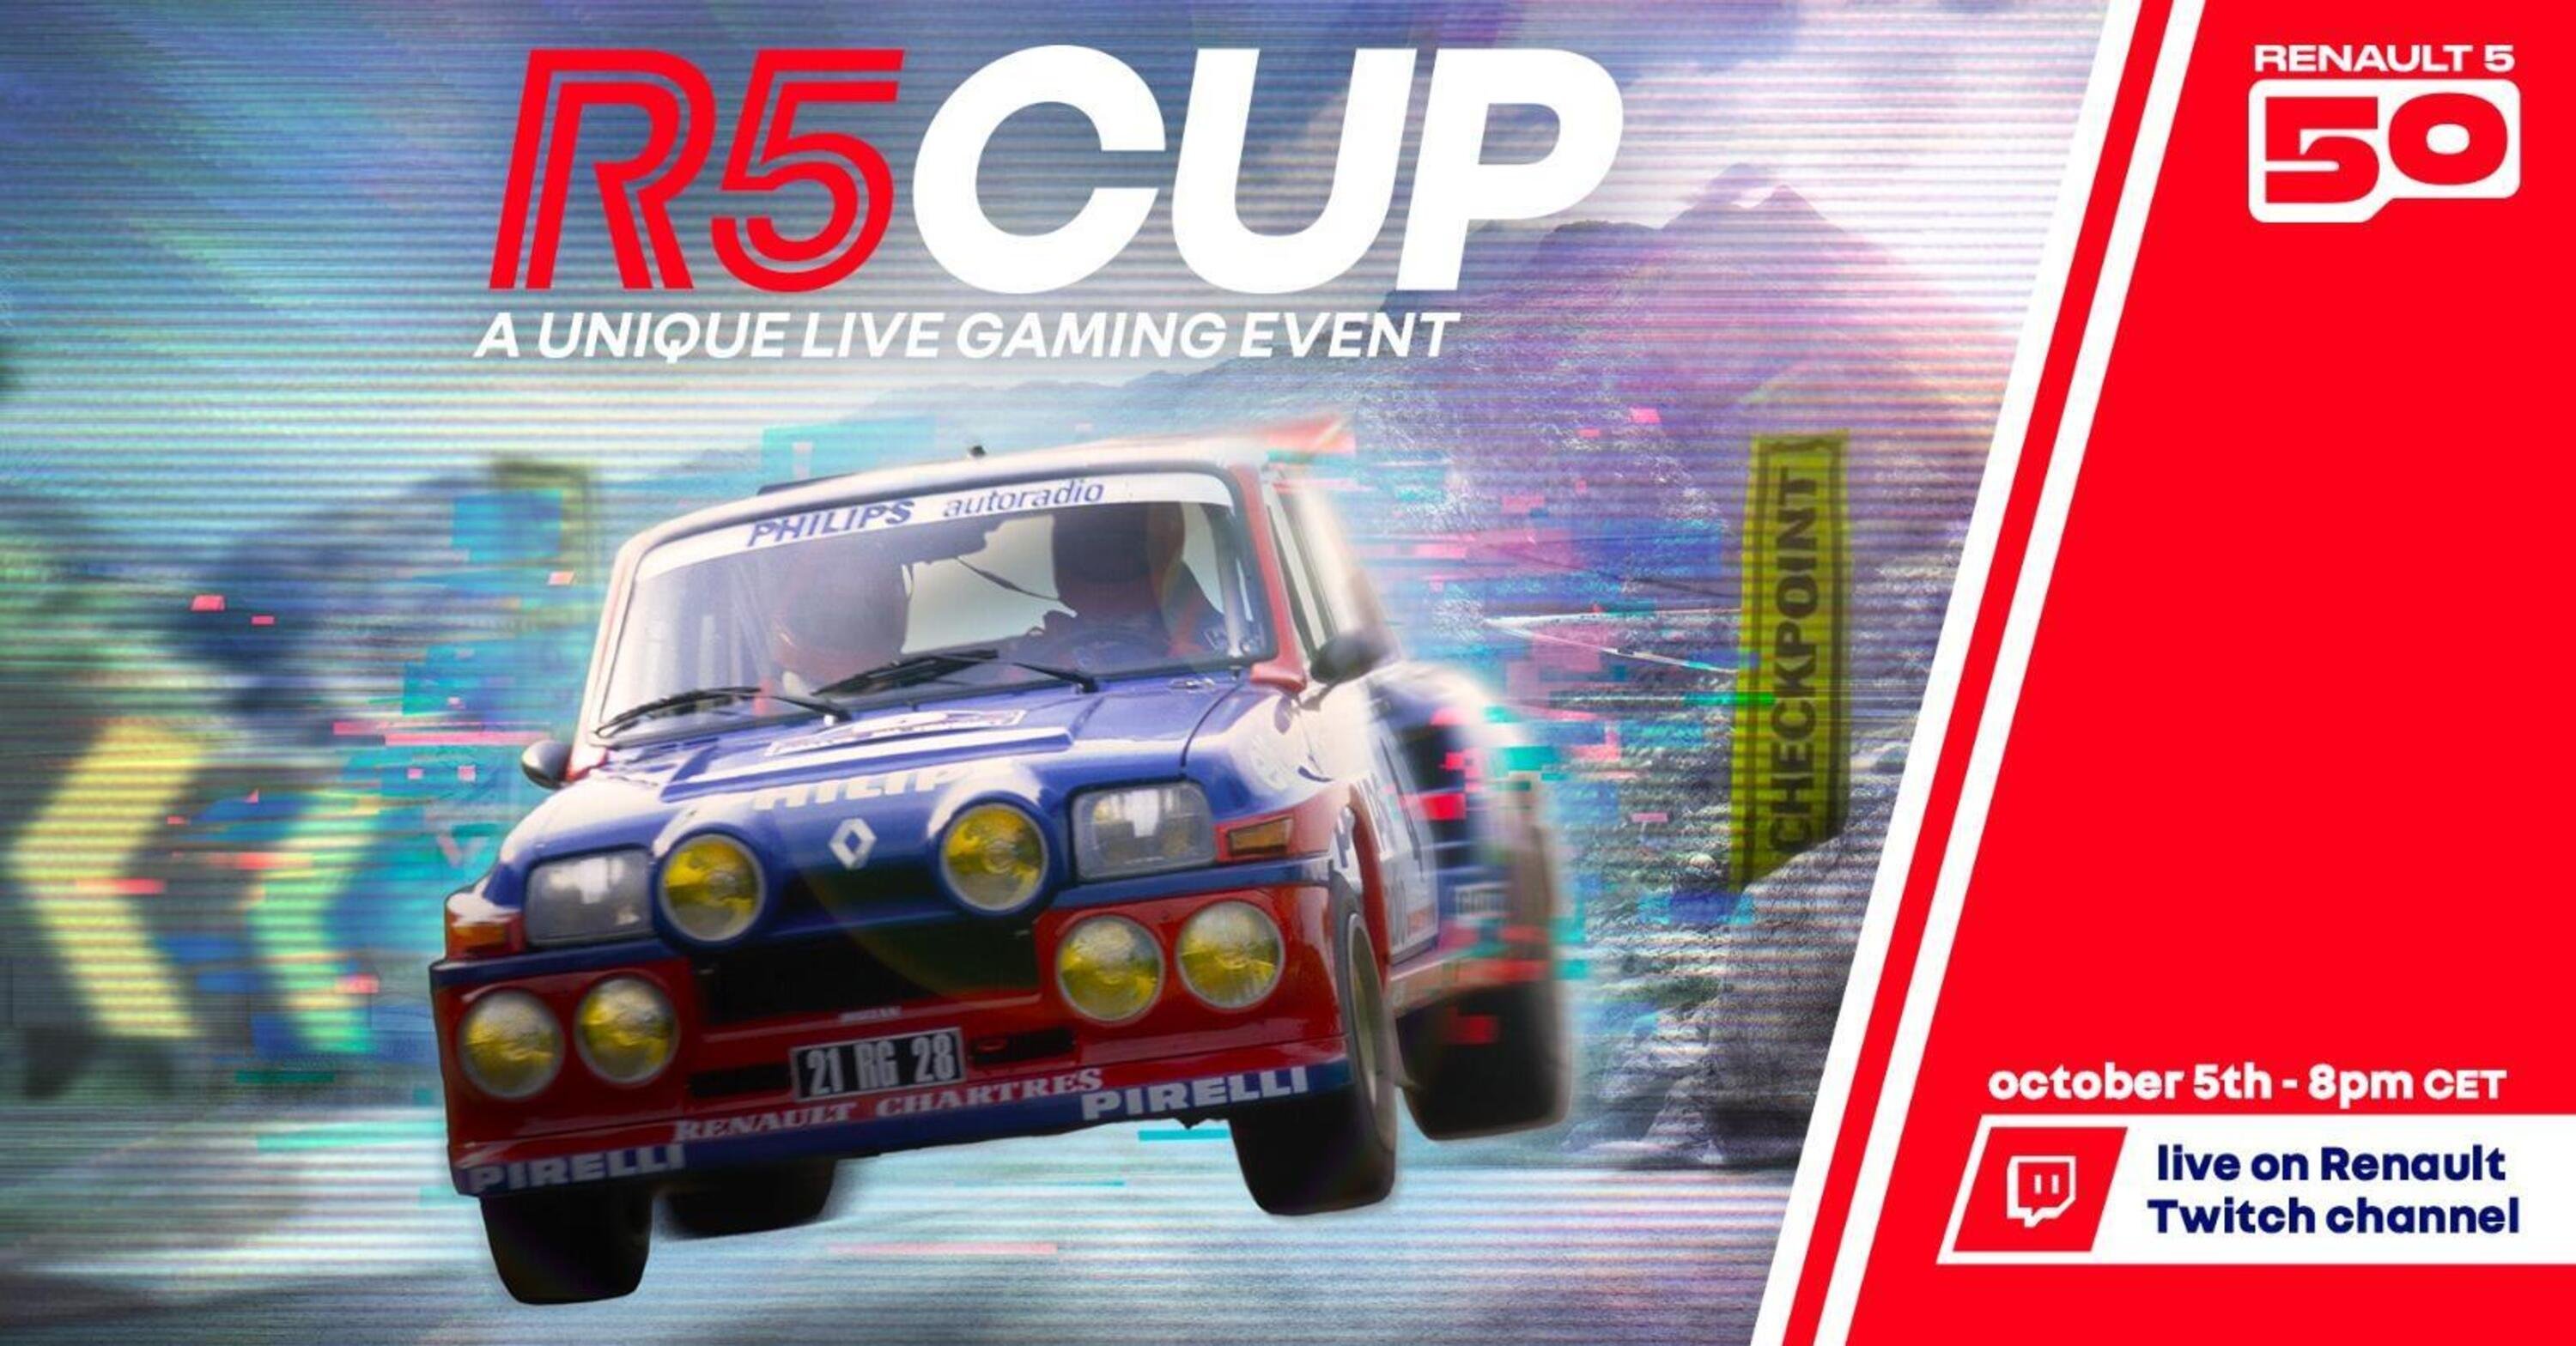 Forza 5 Horizon, un evento speciale con la Renault 5 R5 Cup